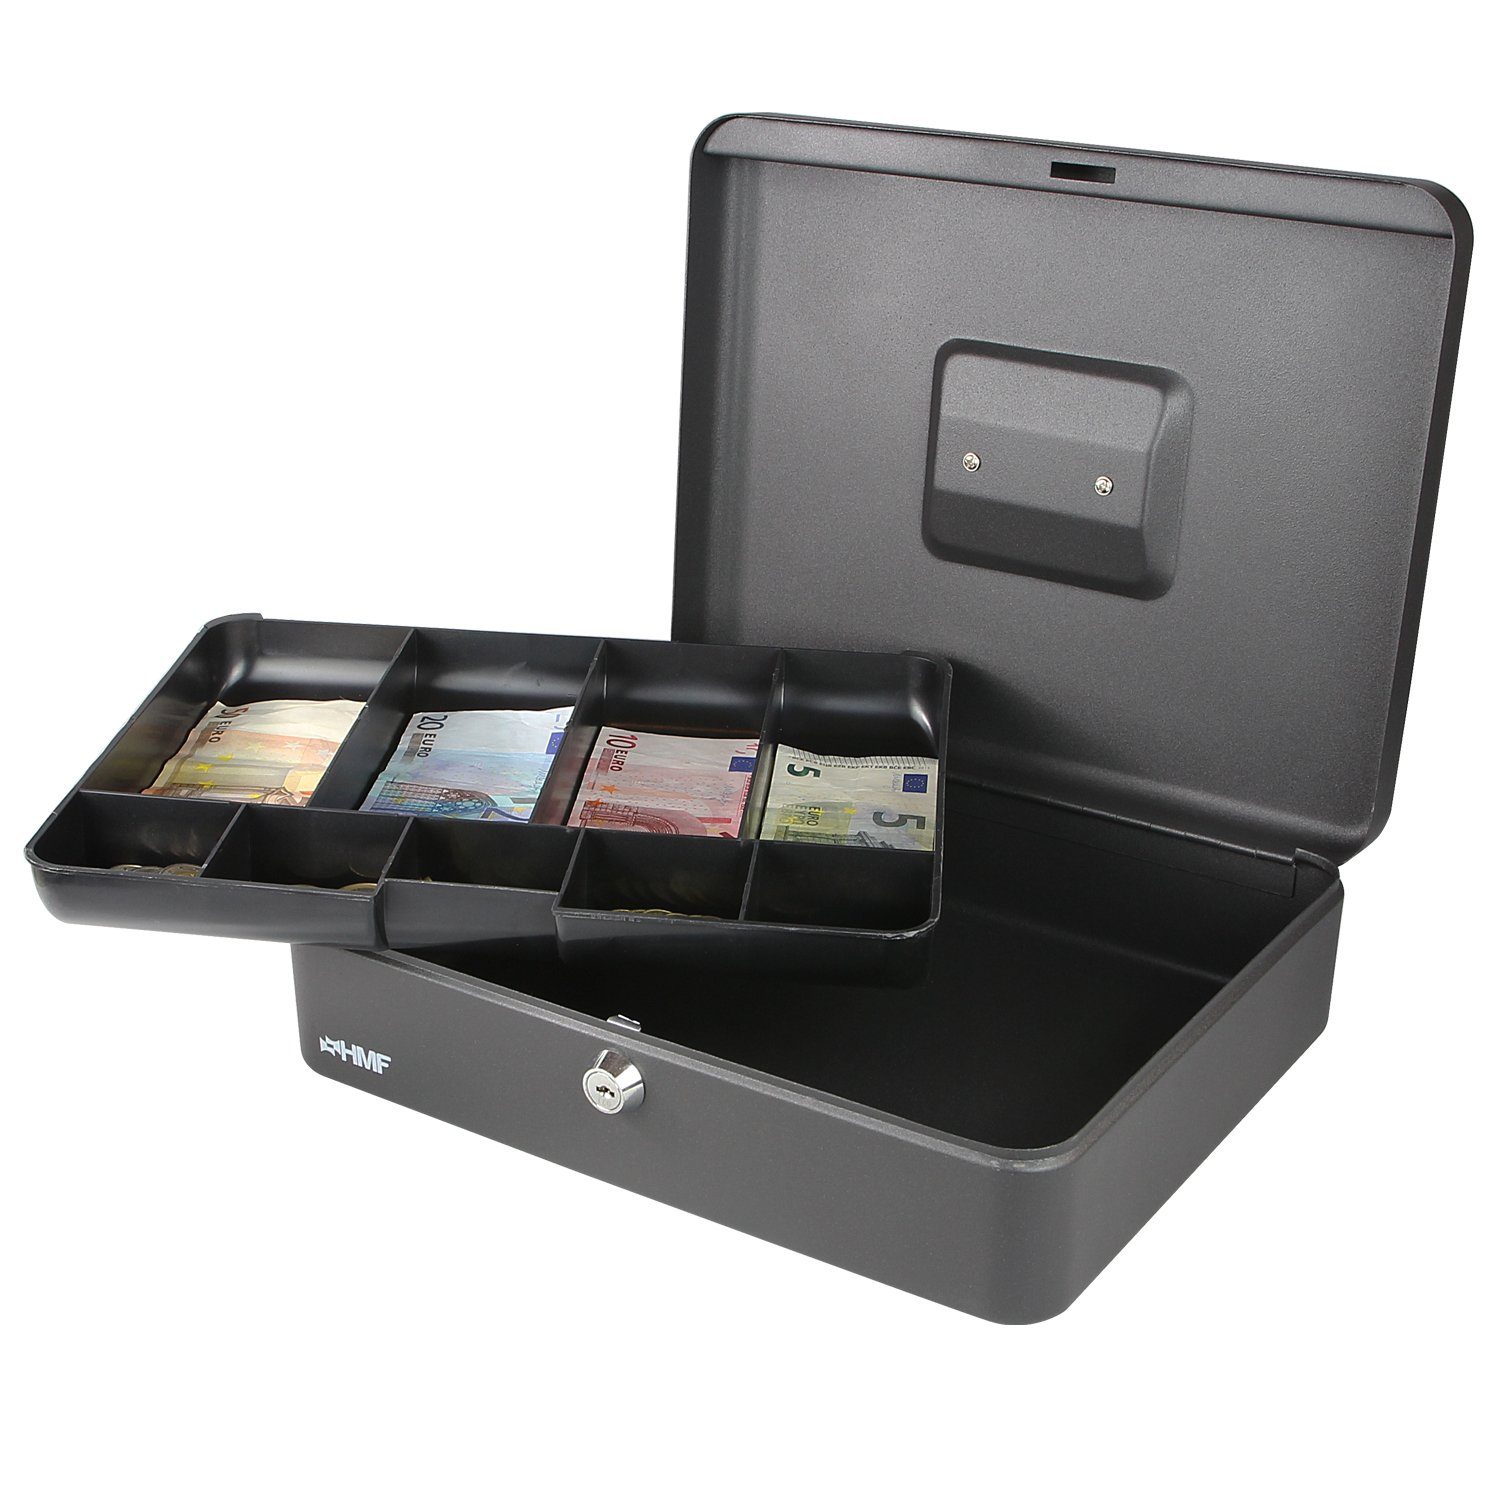 HMF Geldkassette und abschließbare Münzeinsatz Geldbox mit schwarz robuste Scheinfach, Bargeldkasse 30x24x9cm mit Schlüssel